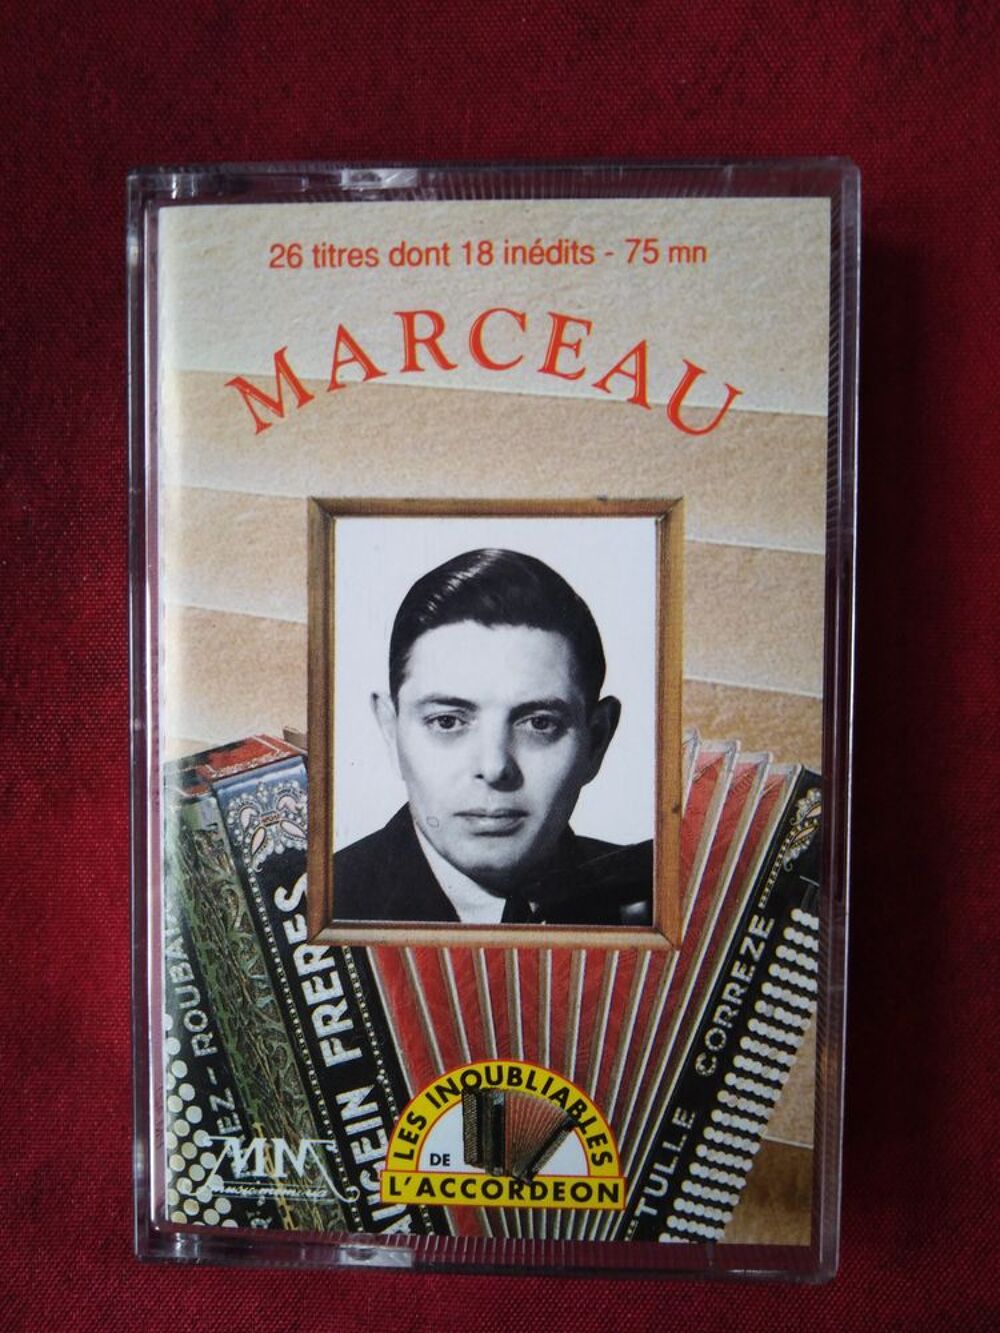 Cassette audio Marceau les inoubliables de l'accord&eacute;on Audio et hifi